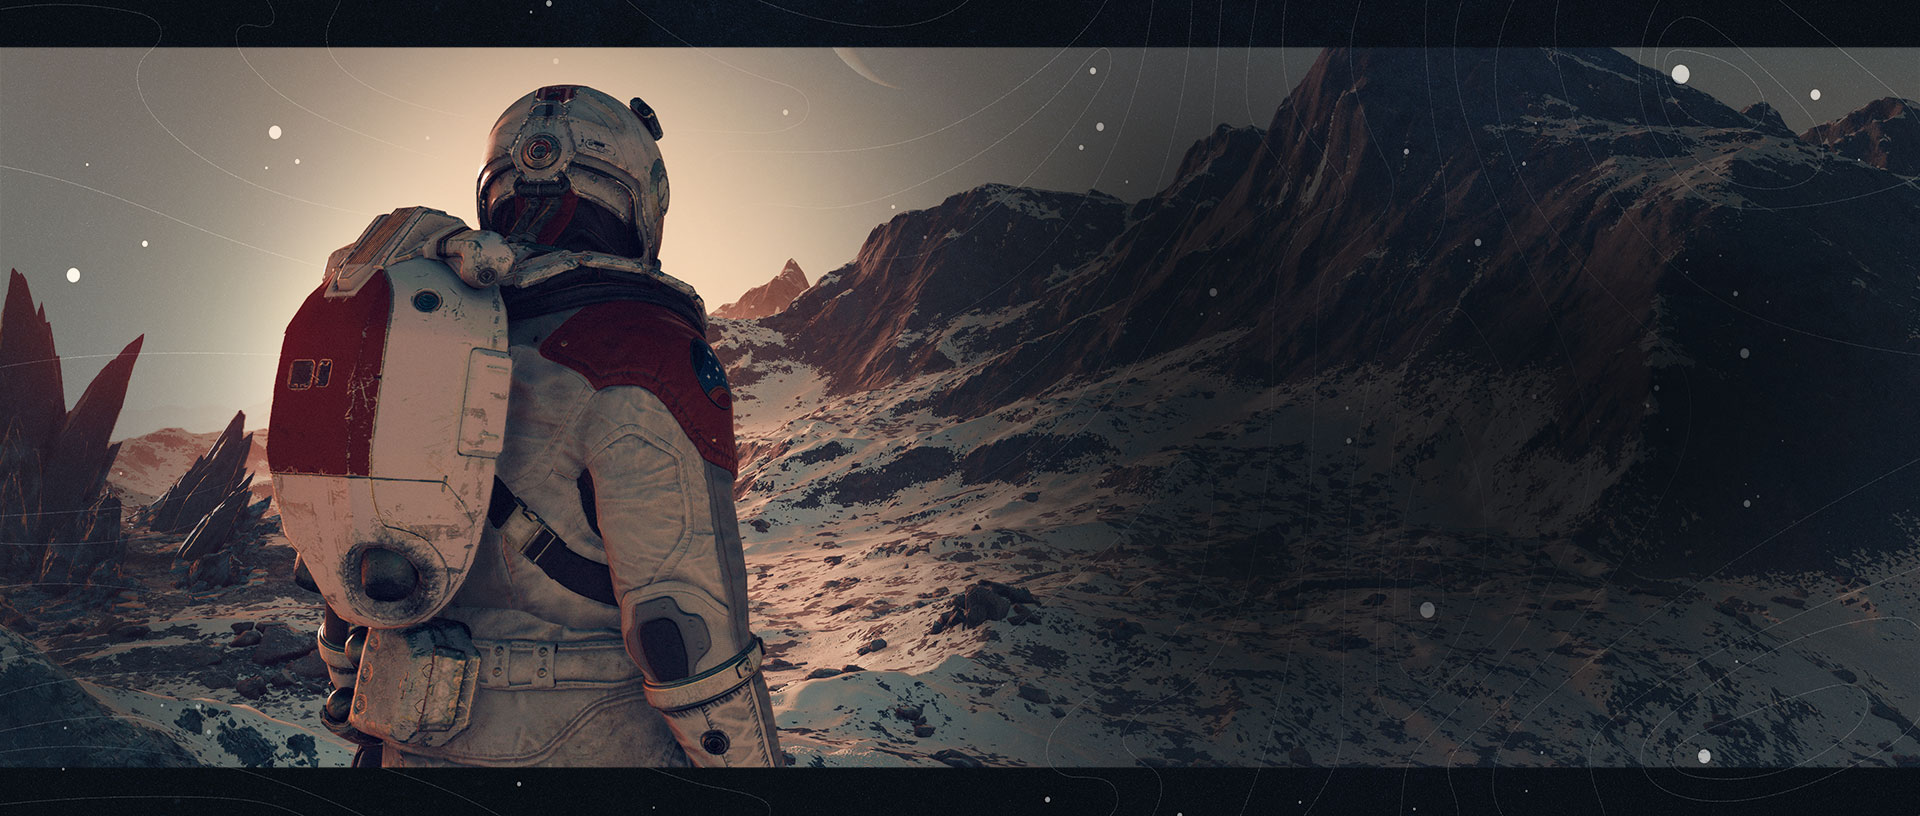 Een ontdekkingsreiziger kijkt naar besneeuwde bergtoppen met een grote ringvormige planeet op de achtergrond.